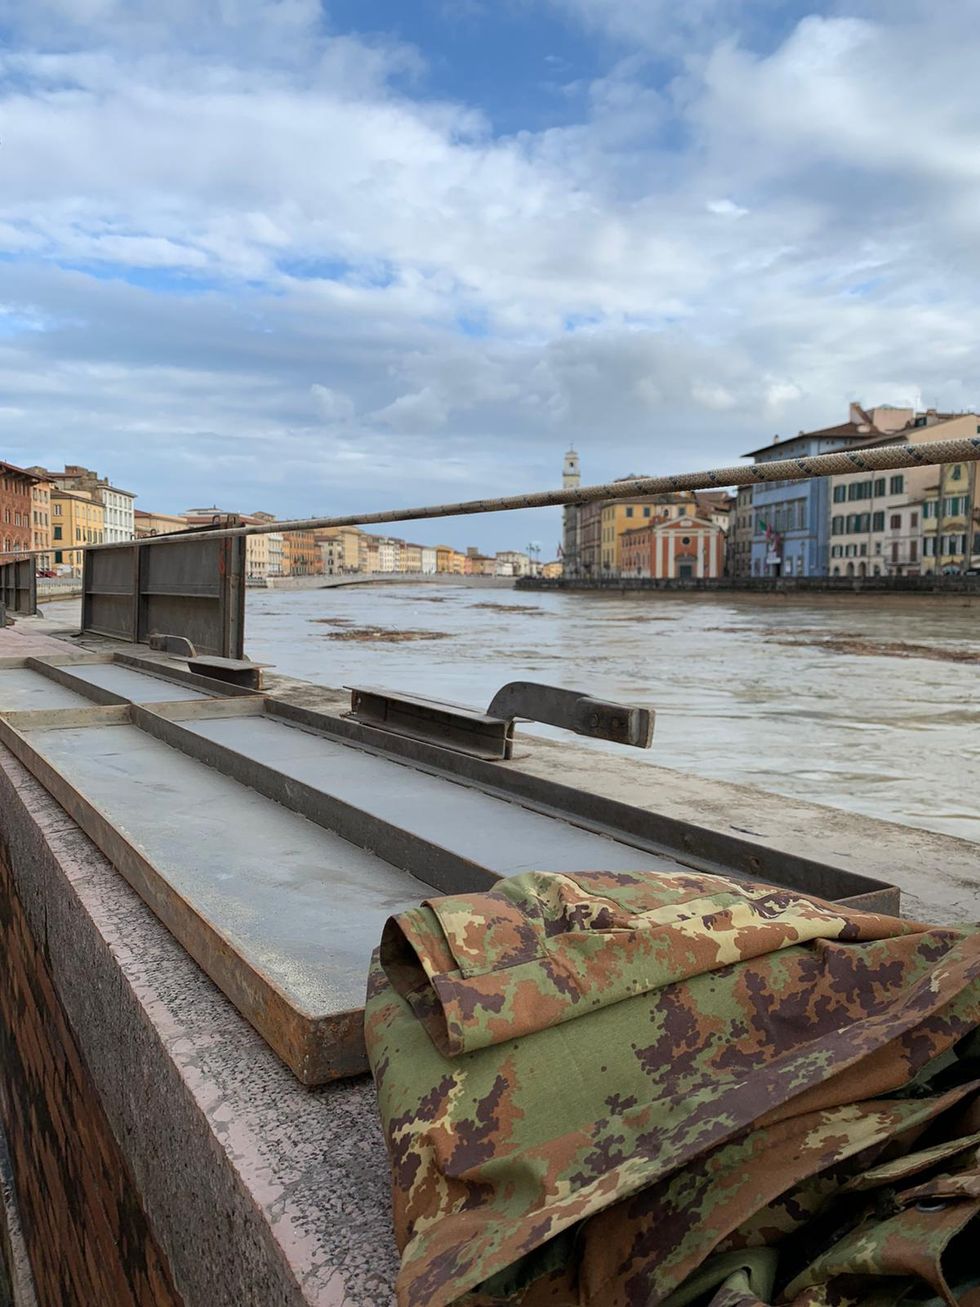 Maltempo: Pisa in allarme per la piena dell'Arno